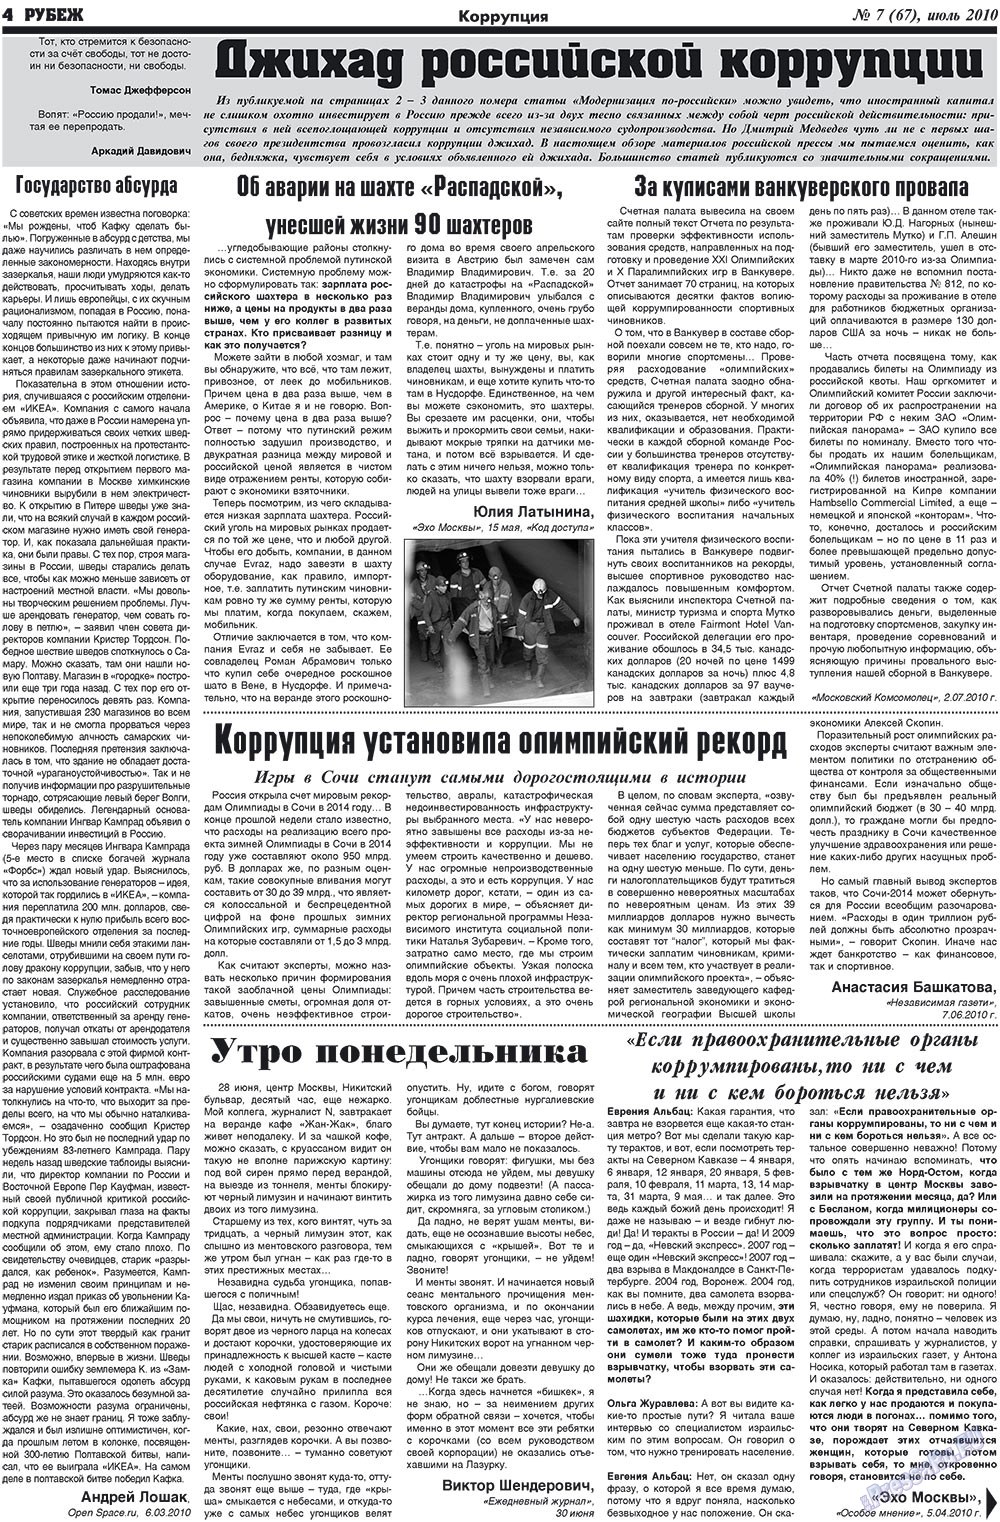 Рубеж (газета). 2010 год, номер 7, стр. 4